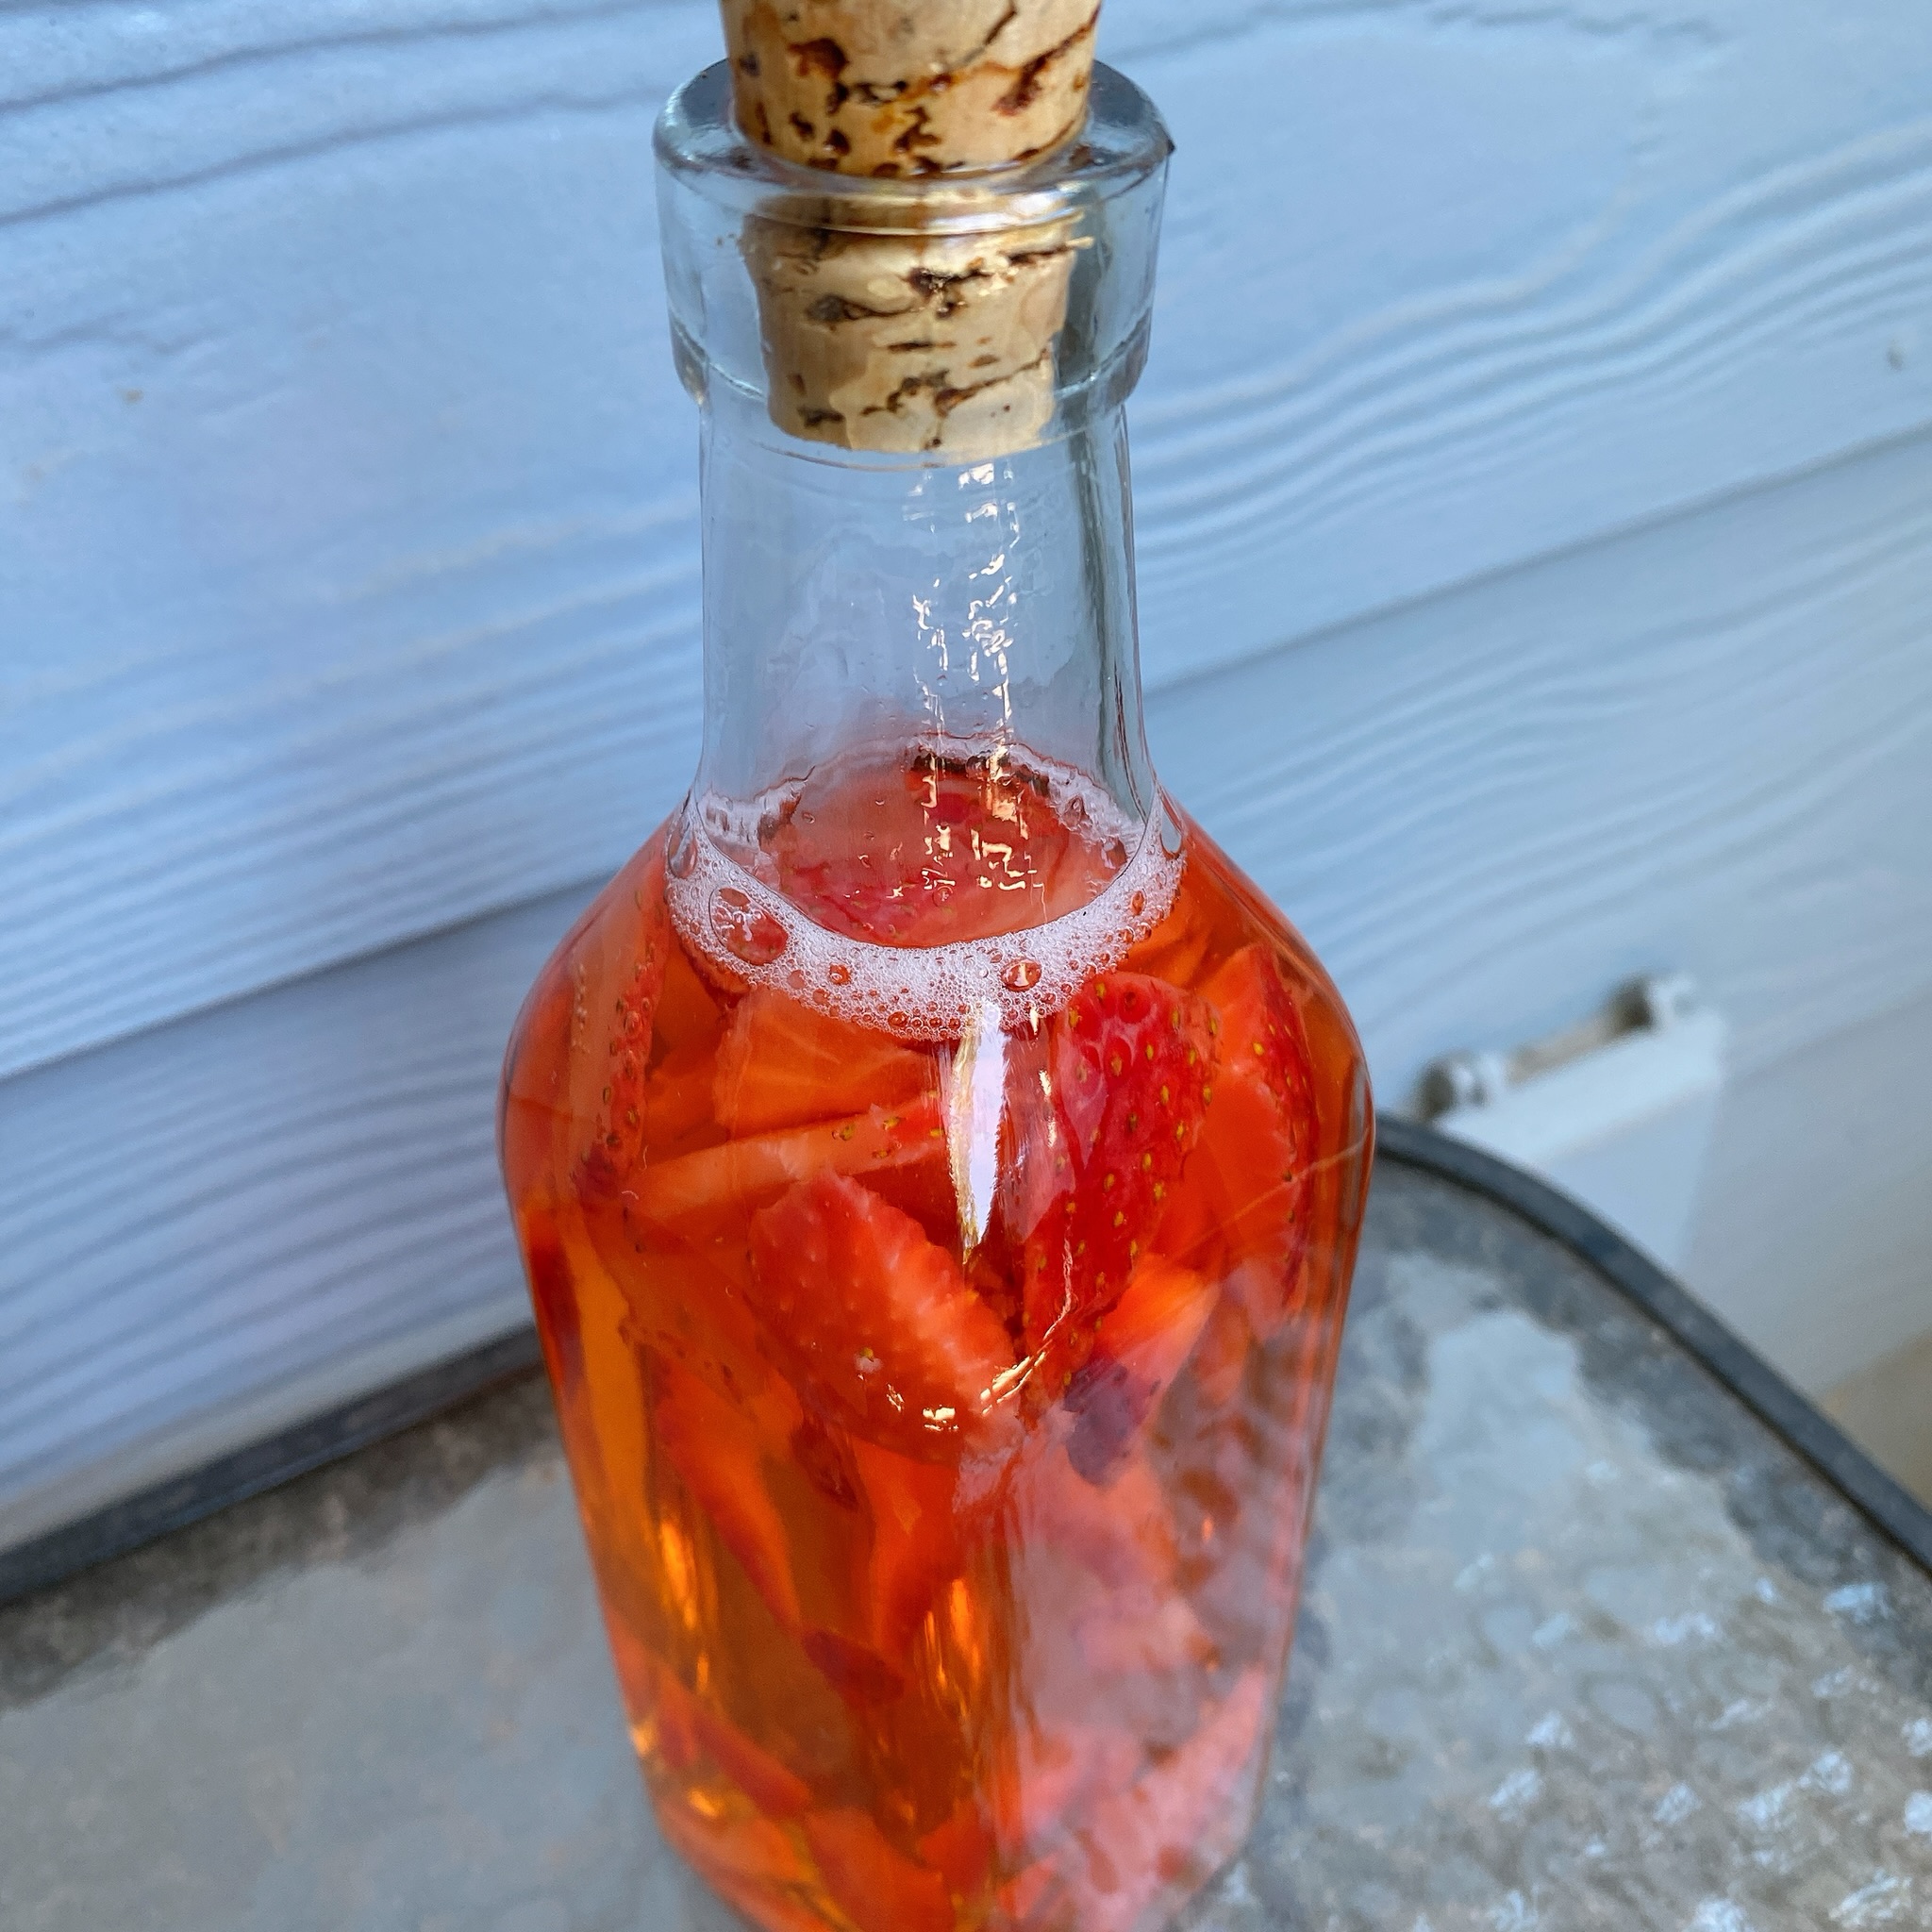 Homemade Strawberry Vinegar